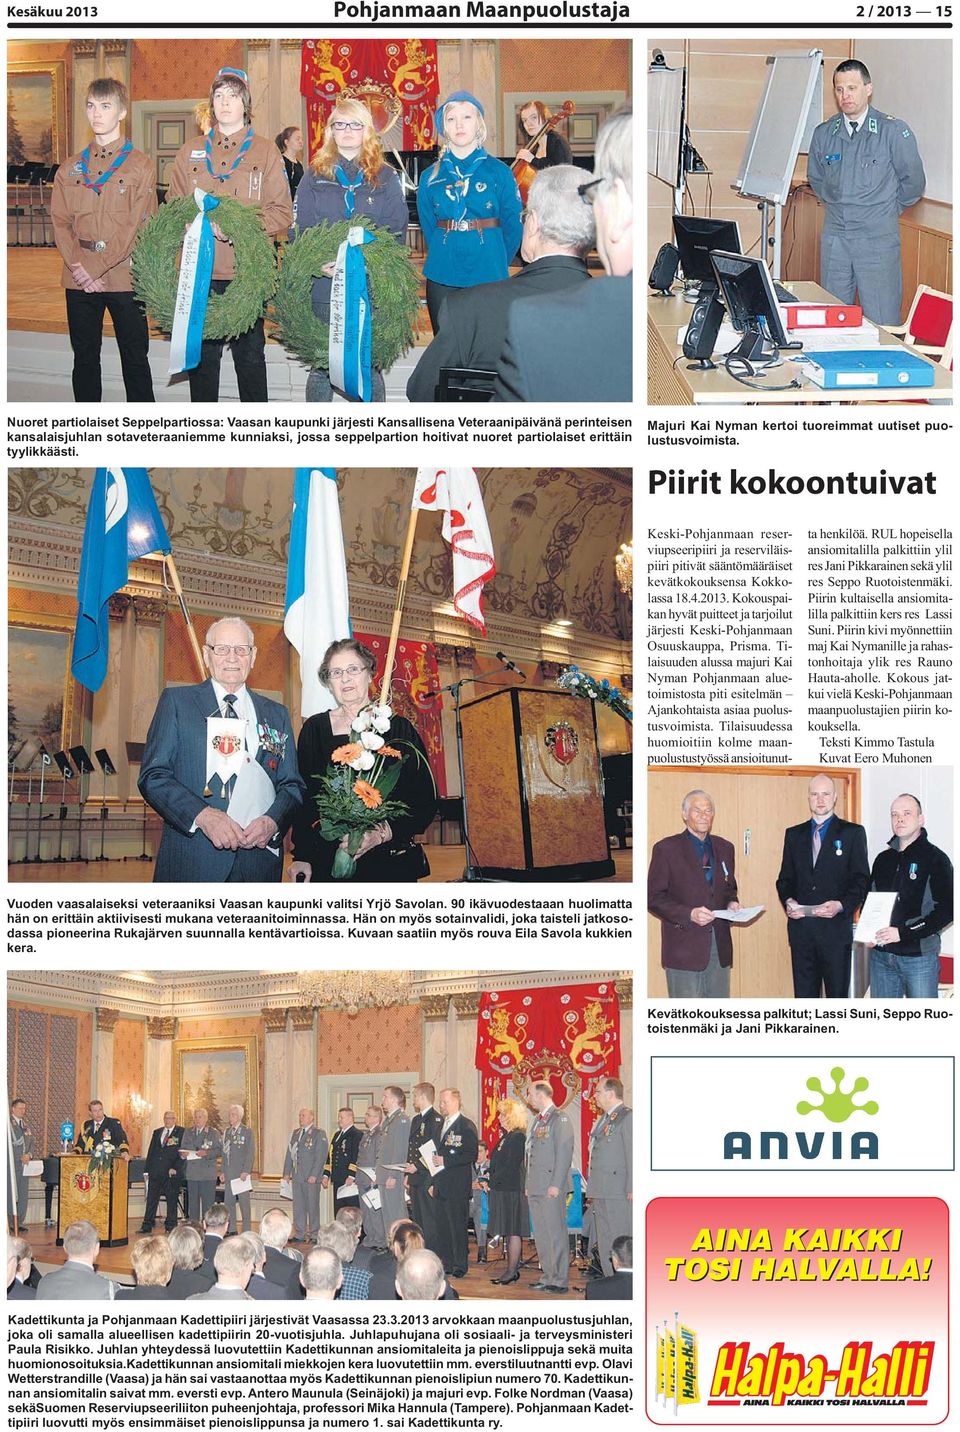 Piirit kokoontuivat Keski-Pohjanmaan reserviupseeripiiri ja reserviläispiiri pitivät sääntömääräiset kevätkokouksensa Kokkolassa 18.4.2013.